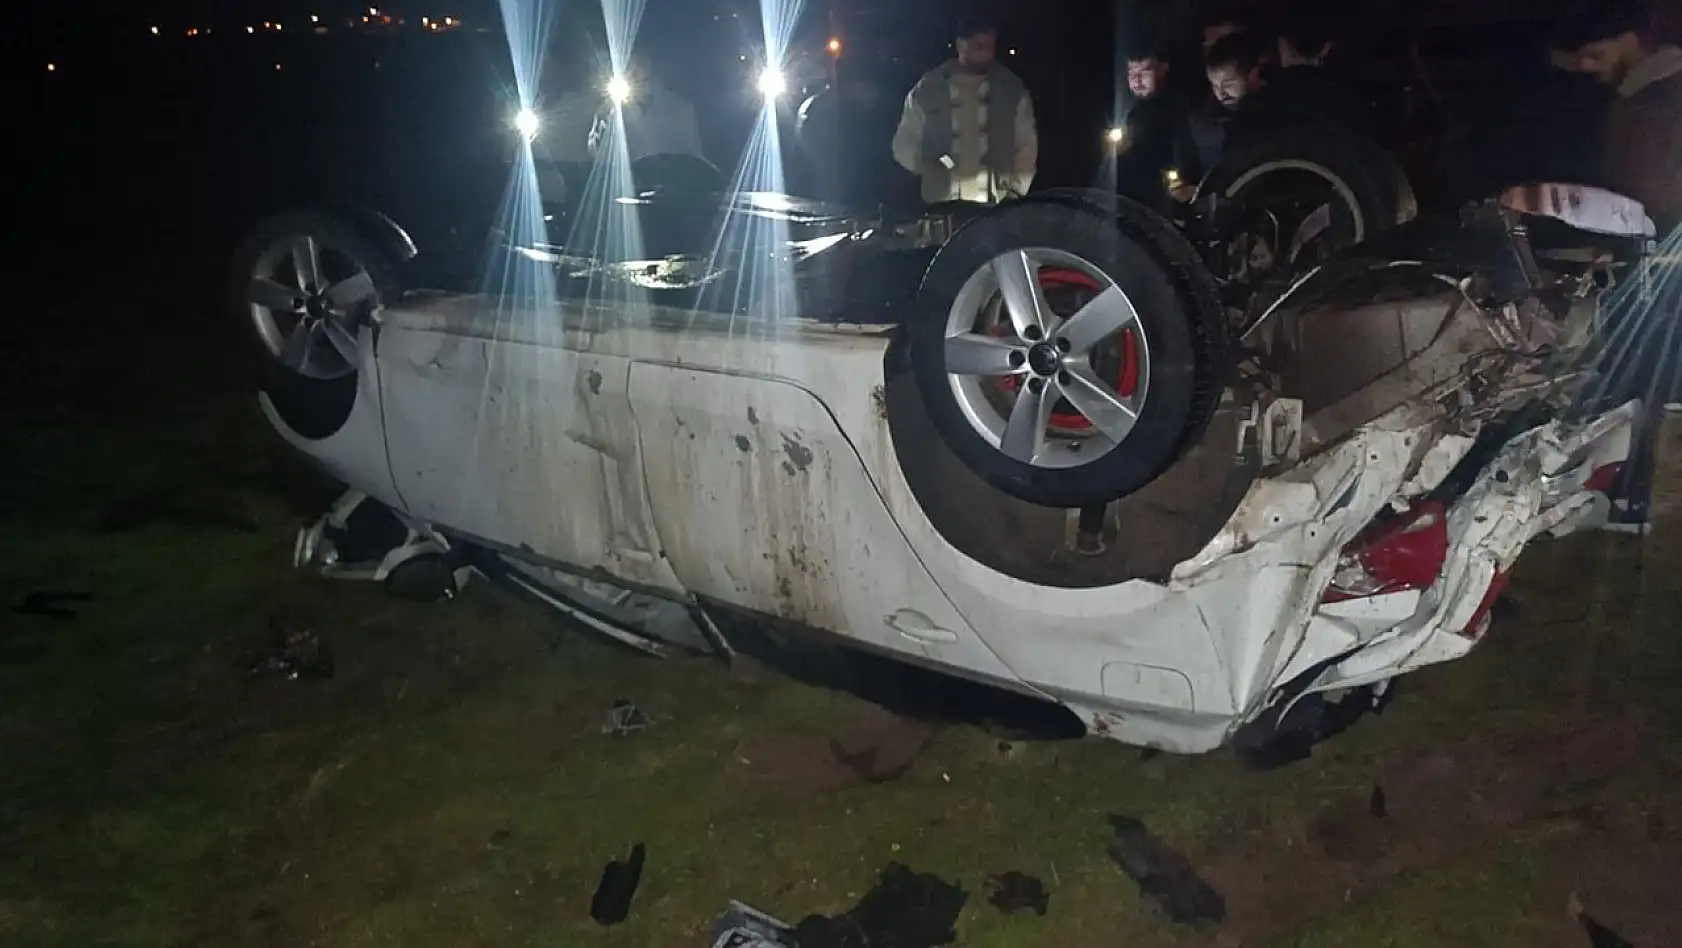 Elazığ'da Direksiyon Hakimiyetini Kaybeden Otomobil Takla Attı: 2 Yaralı